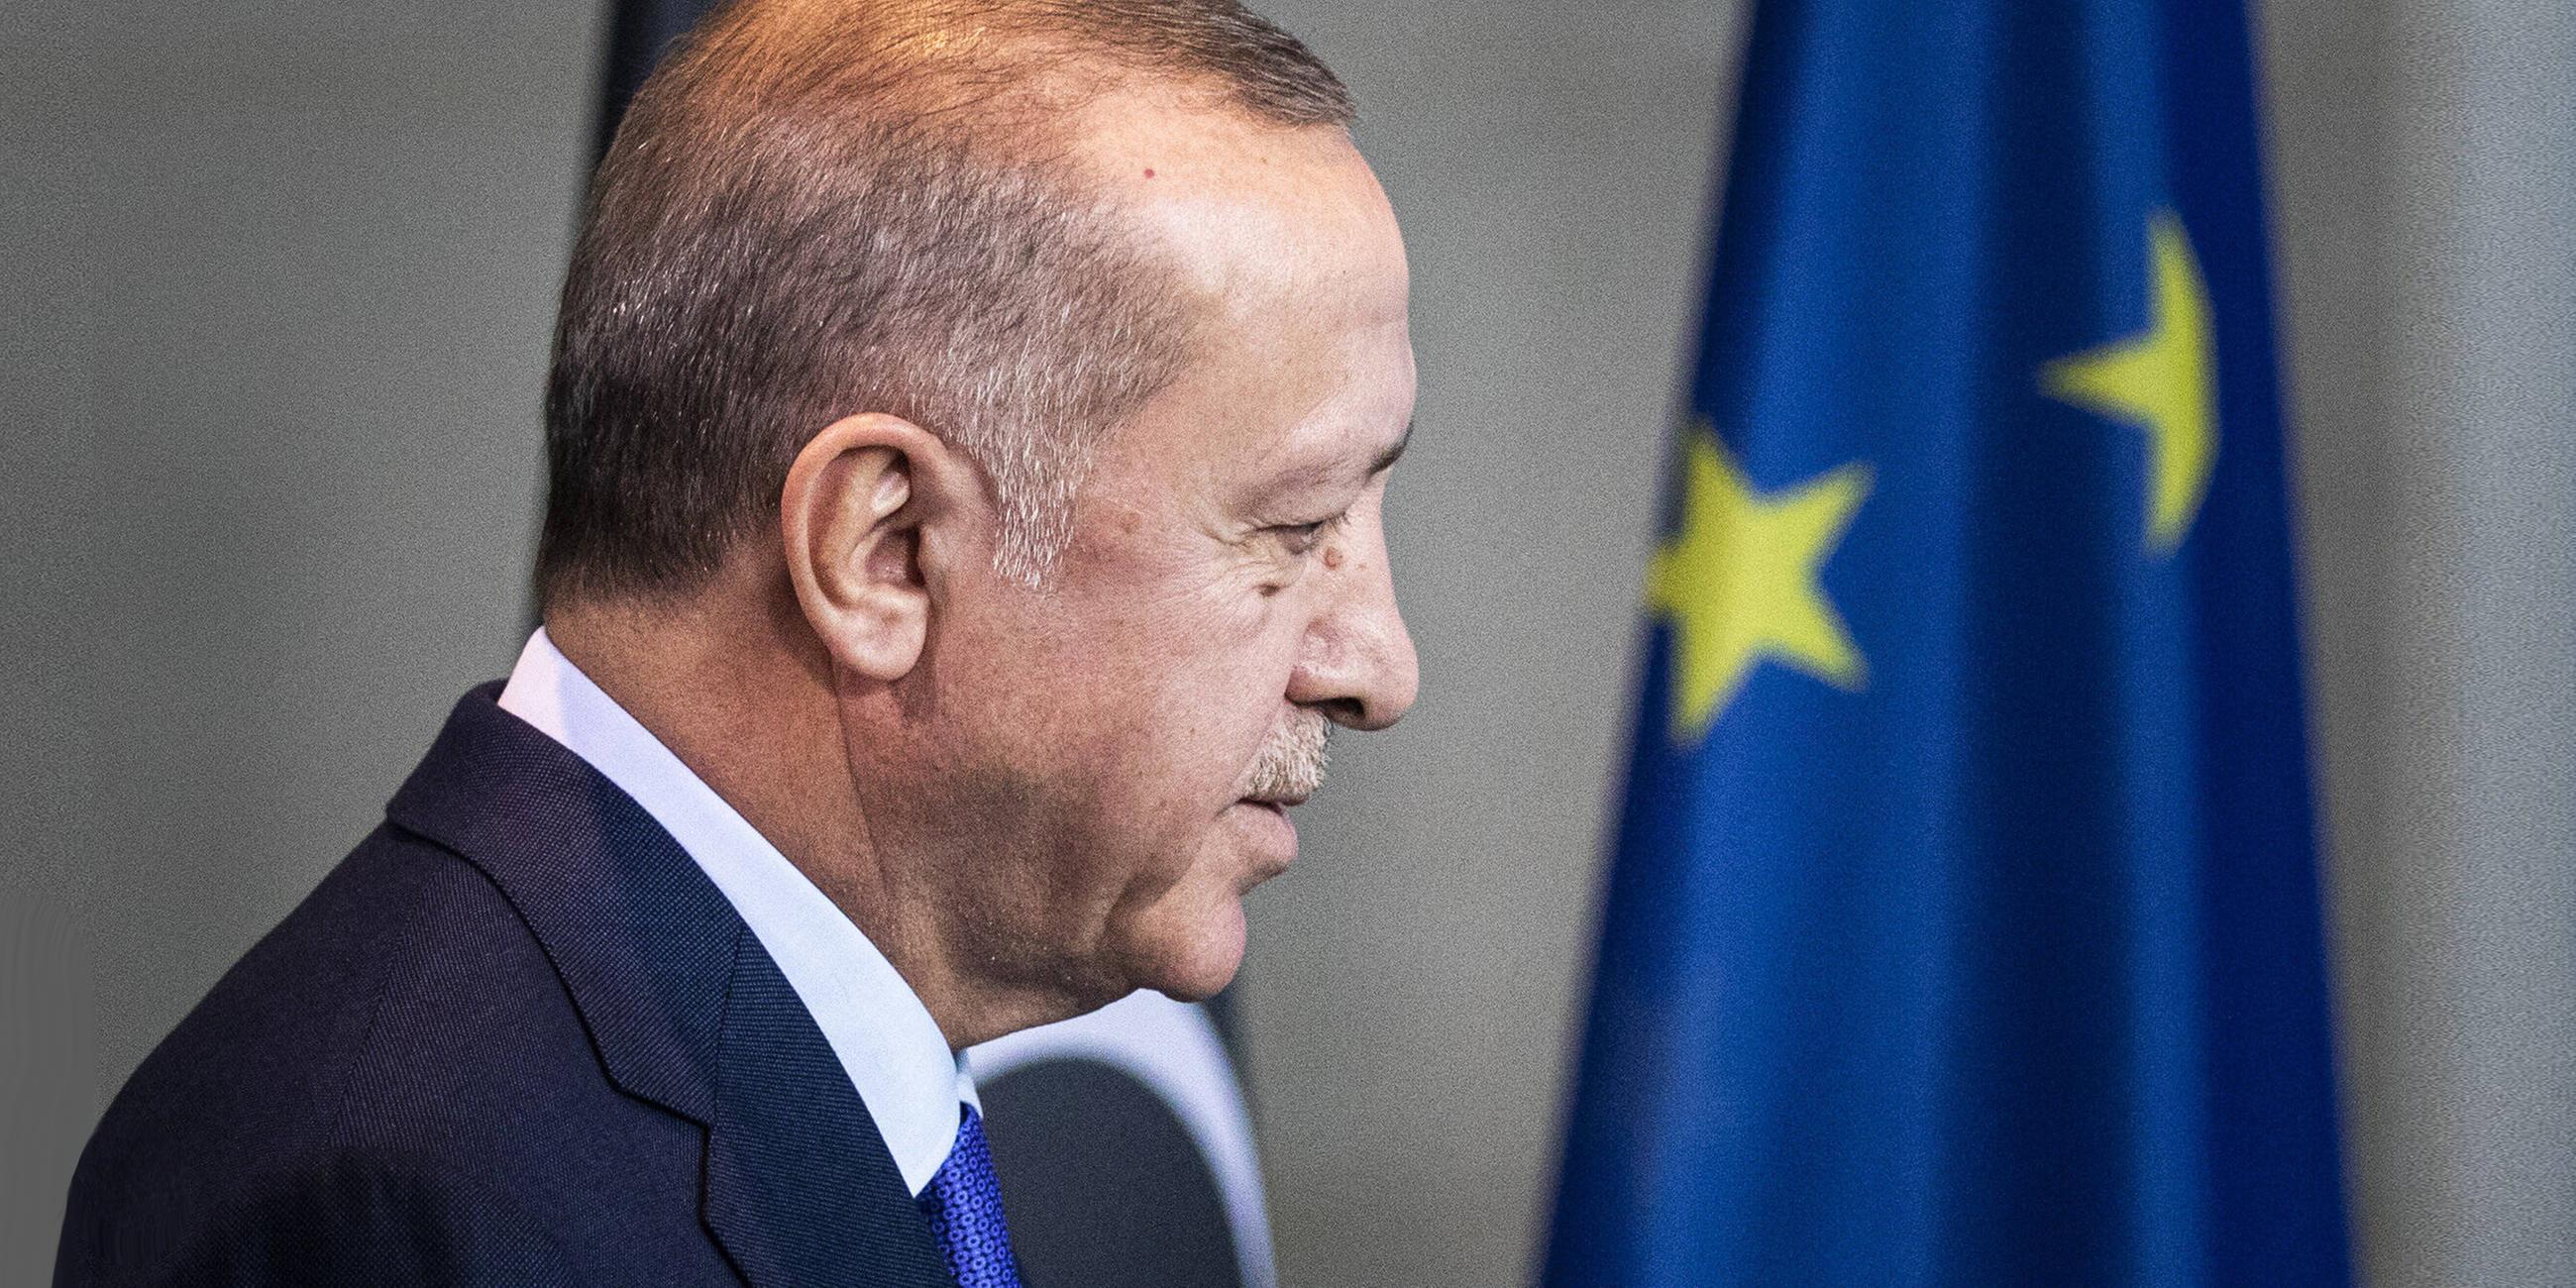 Der türkische Präsident Erdogan vor einer europäischen Flagge. (Archivbild)